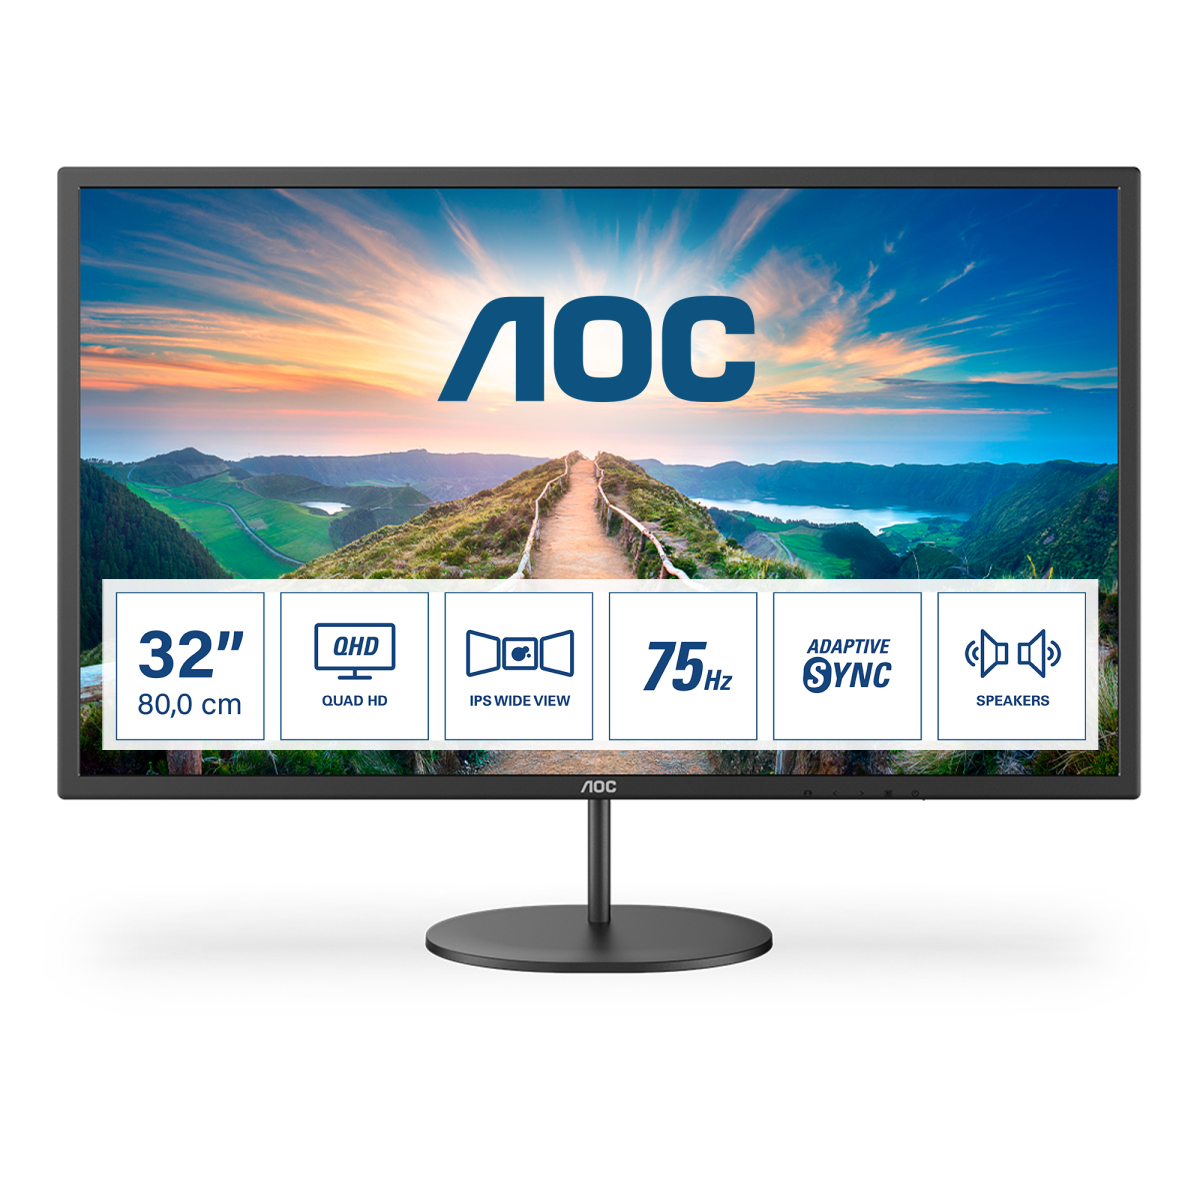 AOC V4 Q32V4 computer monitor